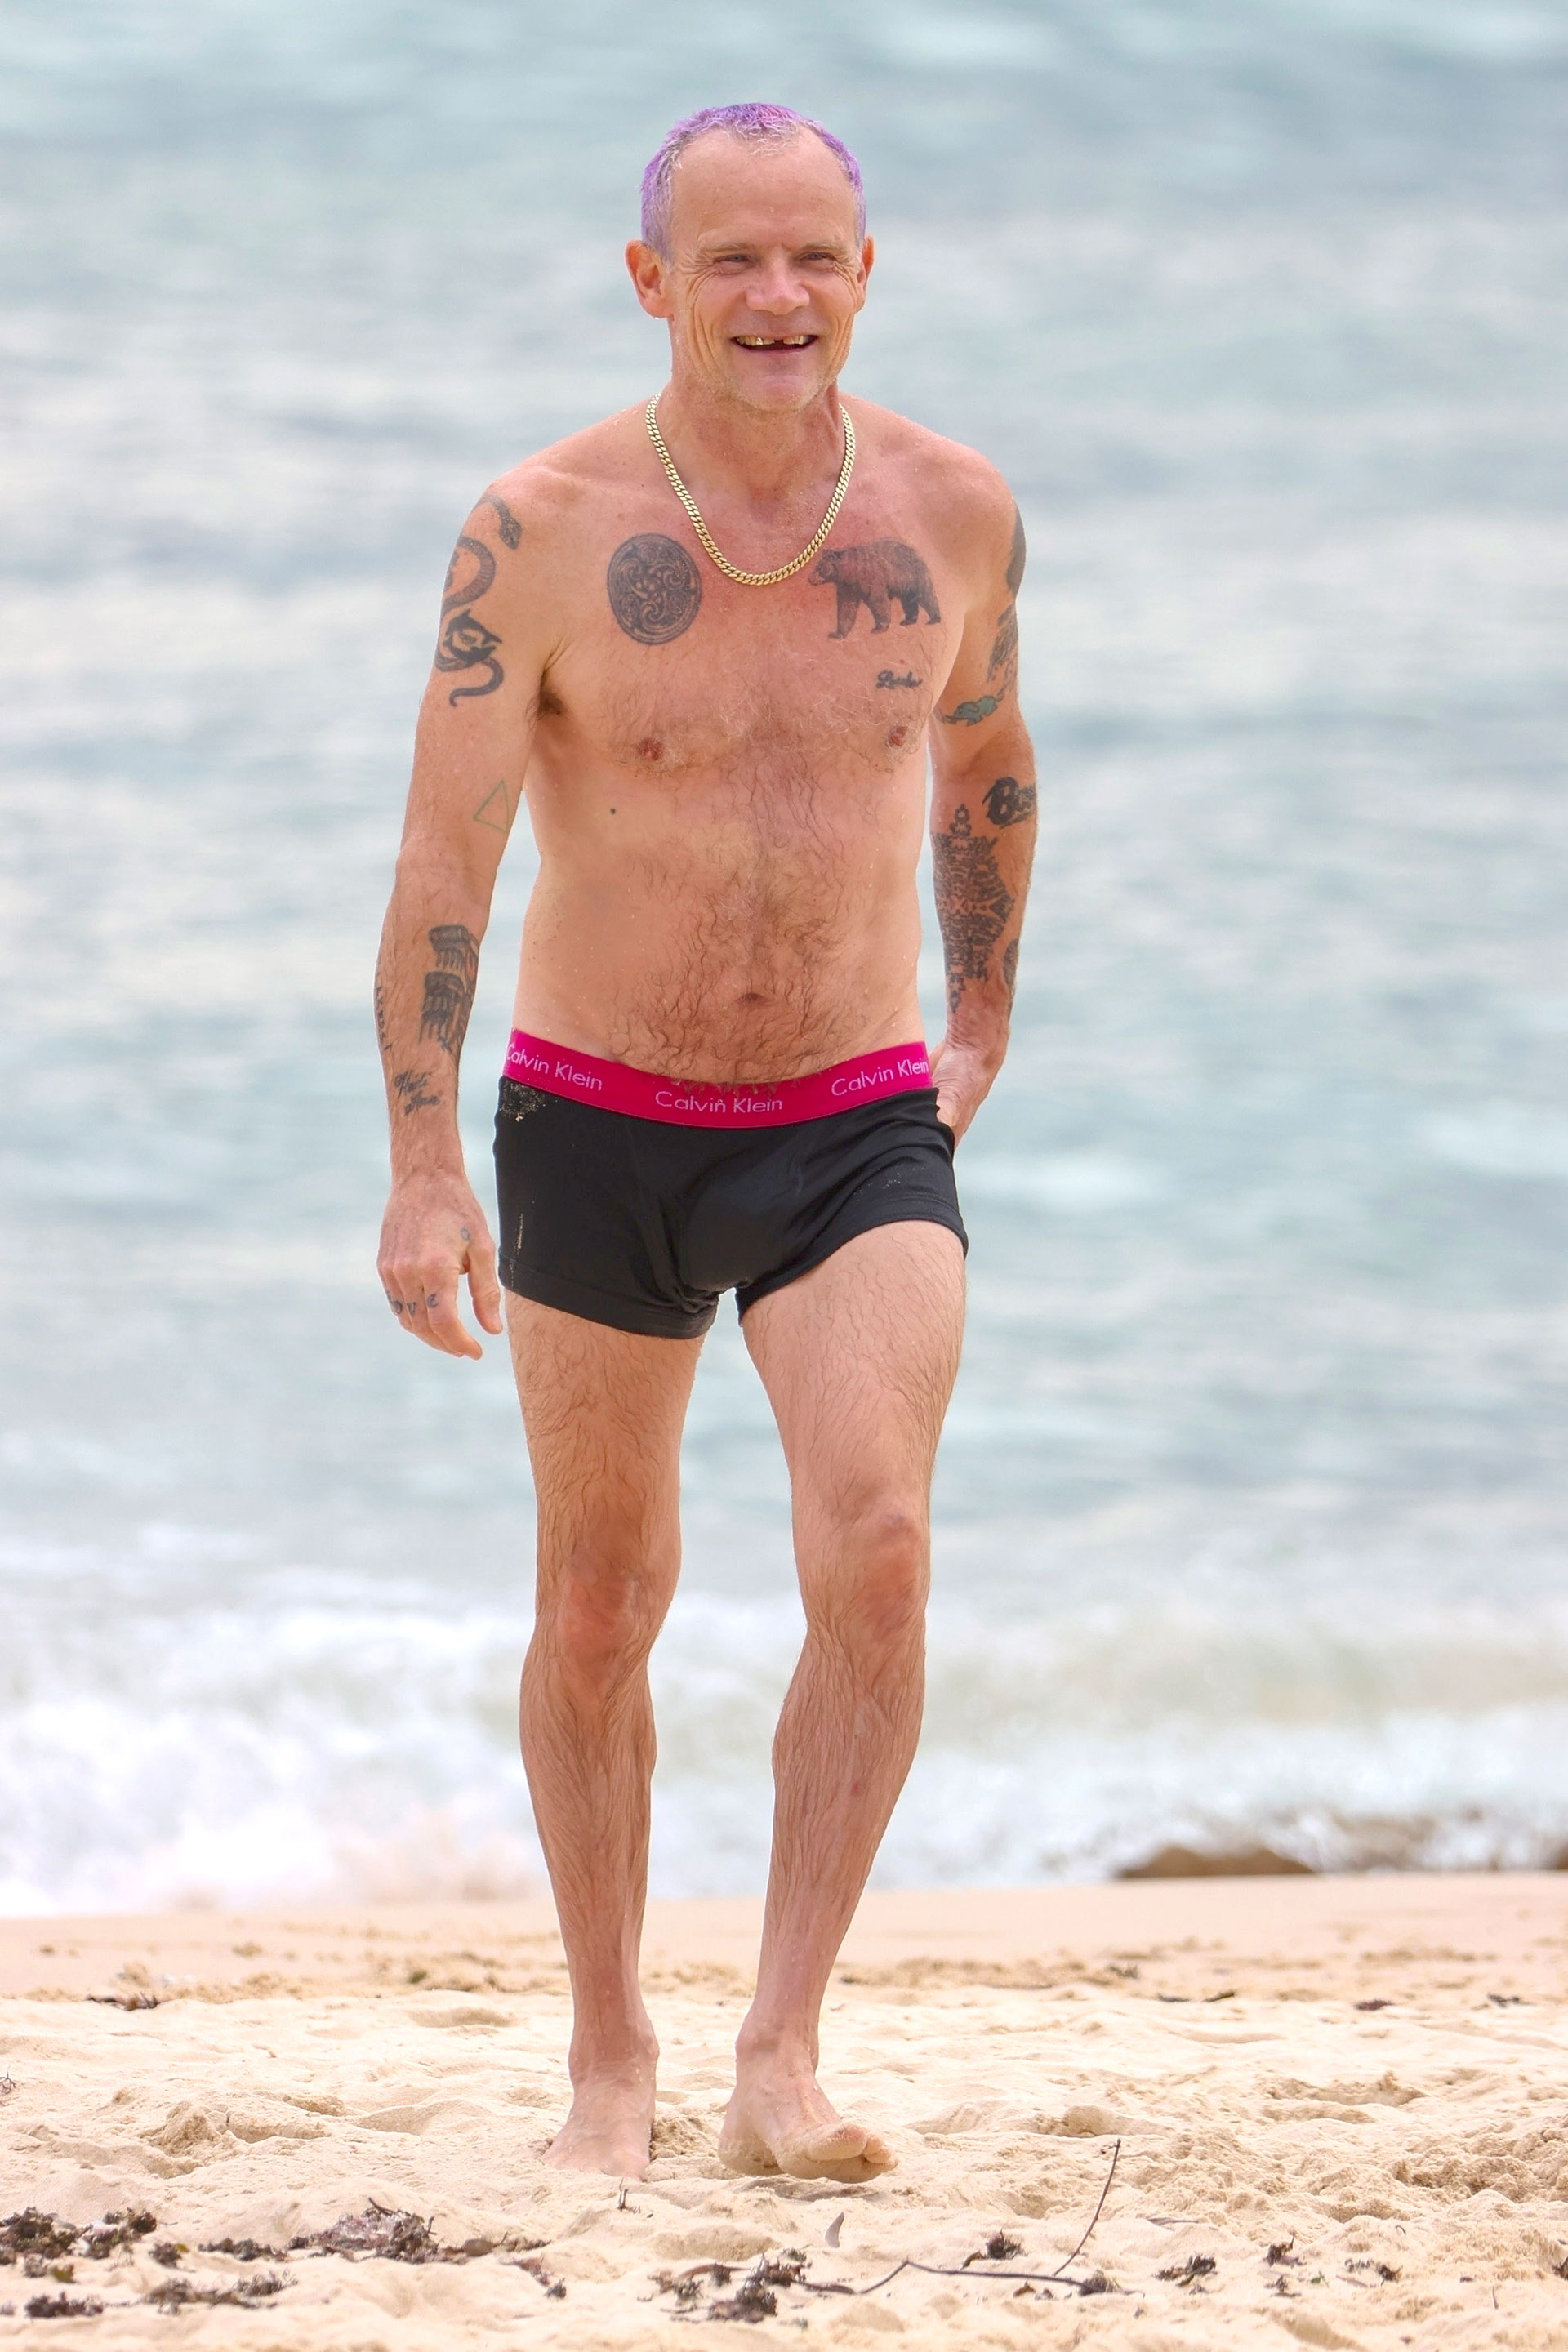 Flea, el bajista de los Red Hot Chili Peppers, disfrutó de un día de sol en las playas de Sydney. El músico descansó, se refrescó en el mar y también saludó de manera cordial a un grupo de fanáticas que se acercó a saludarlo